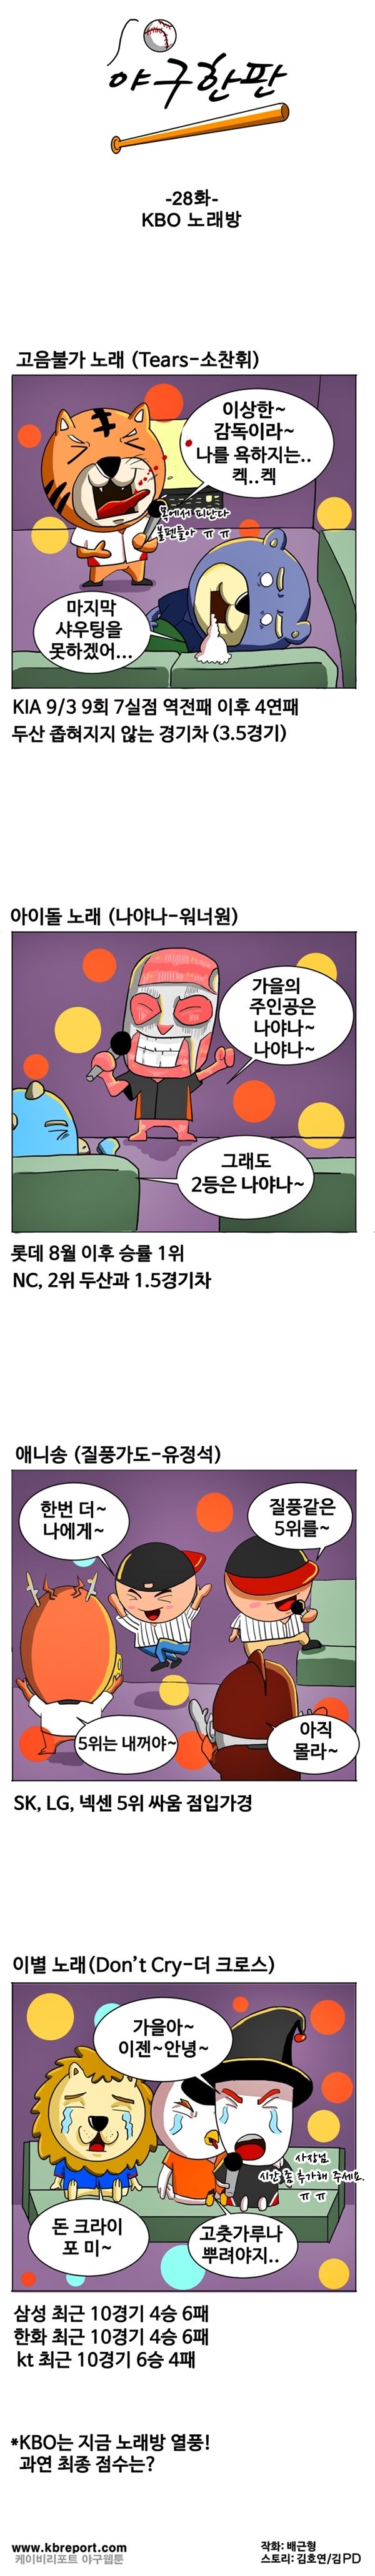 출처: [KBO카툰] '고음불가' KIA-두산, '나야나' 롯데